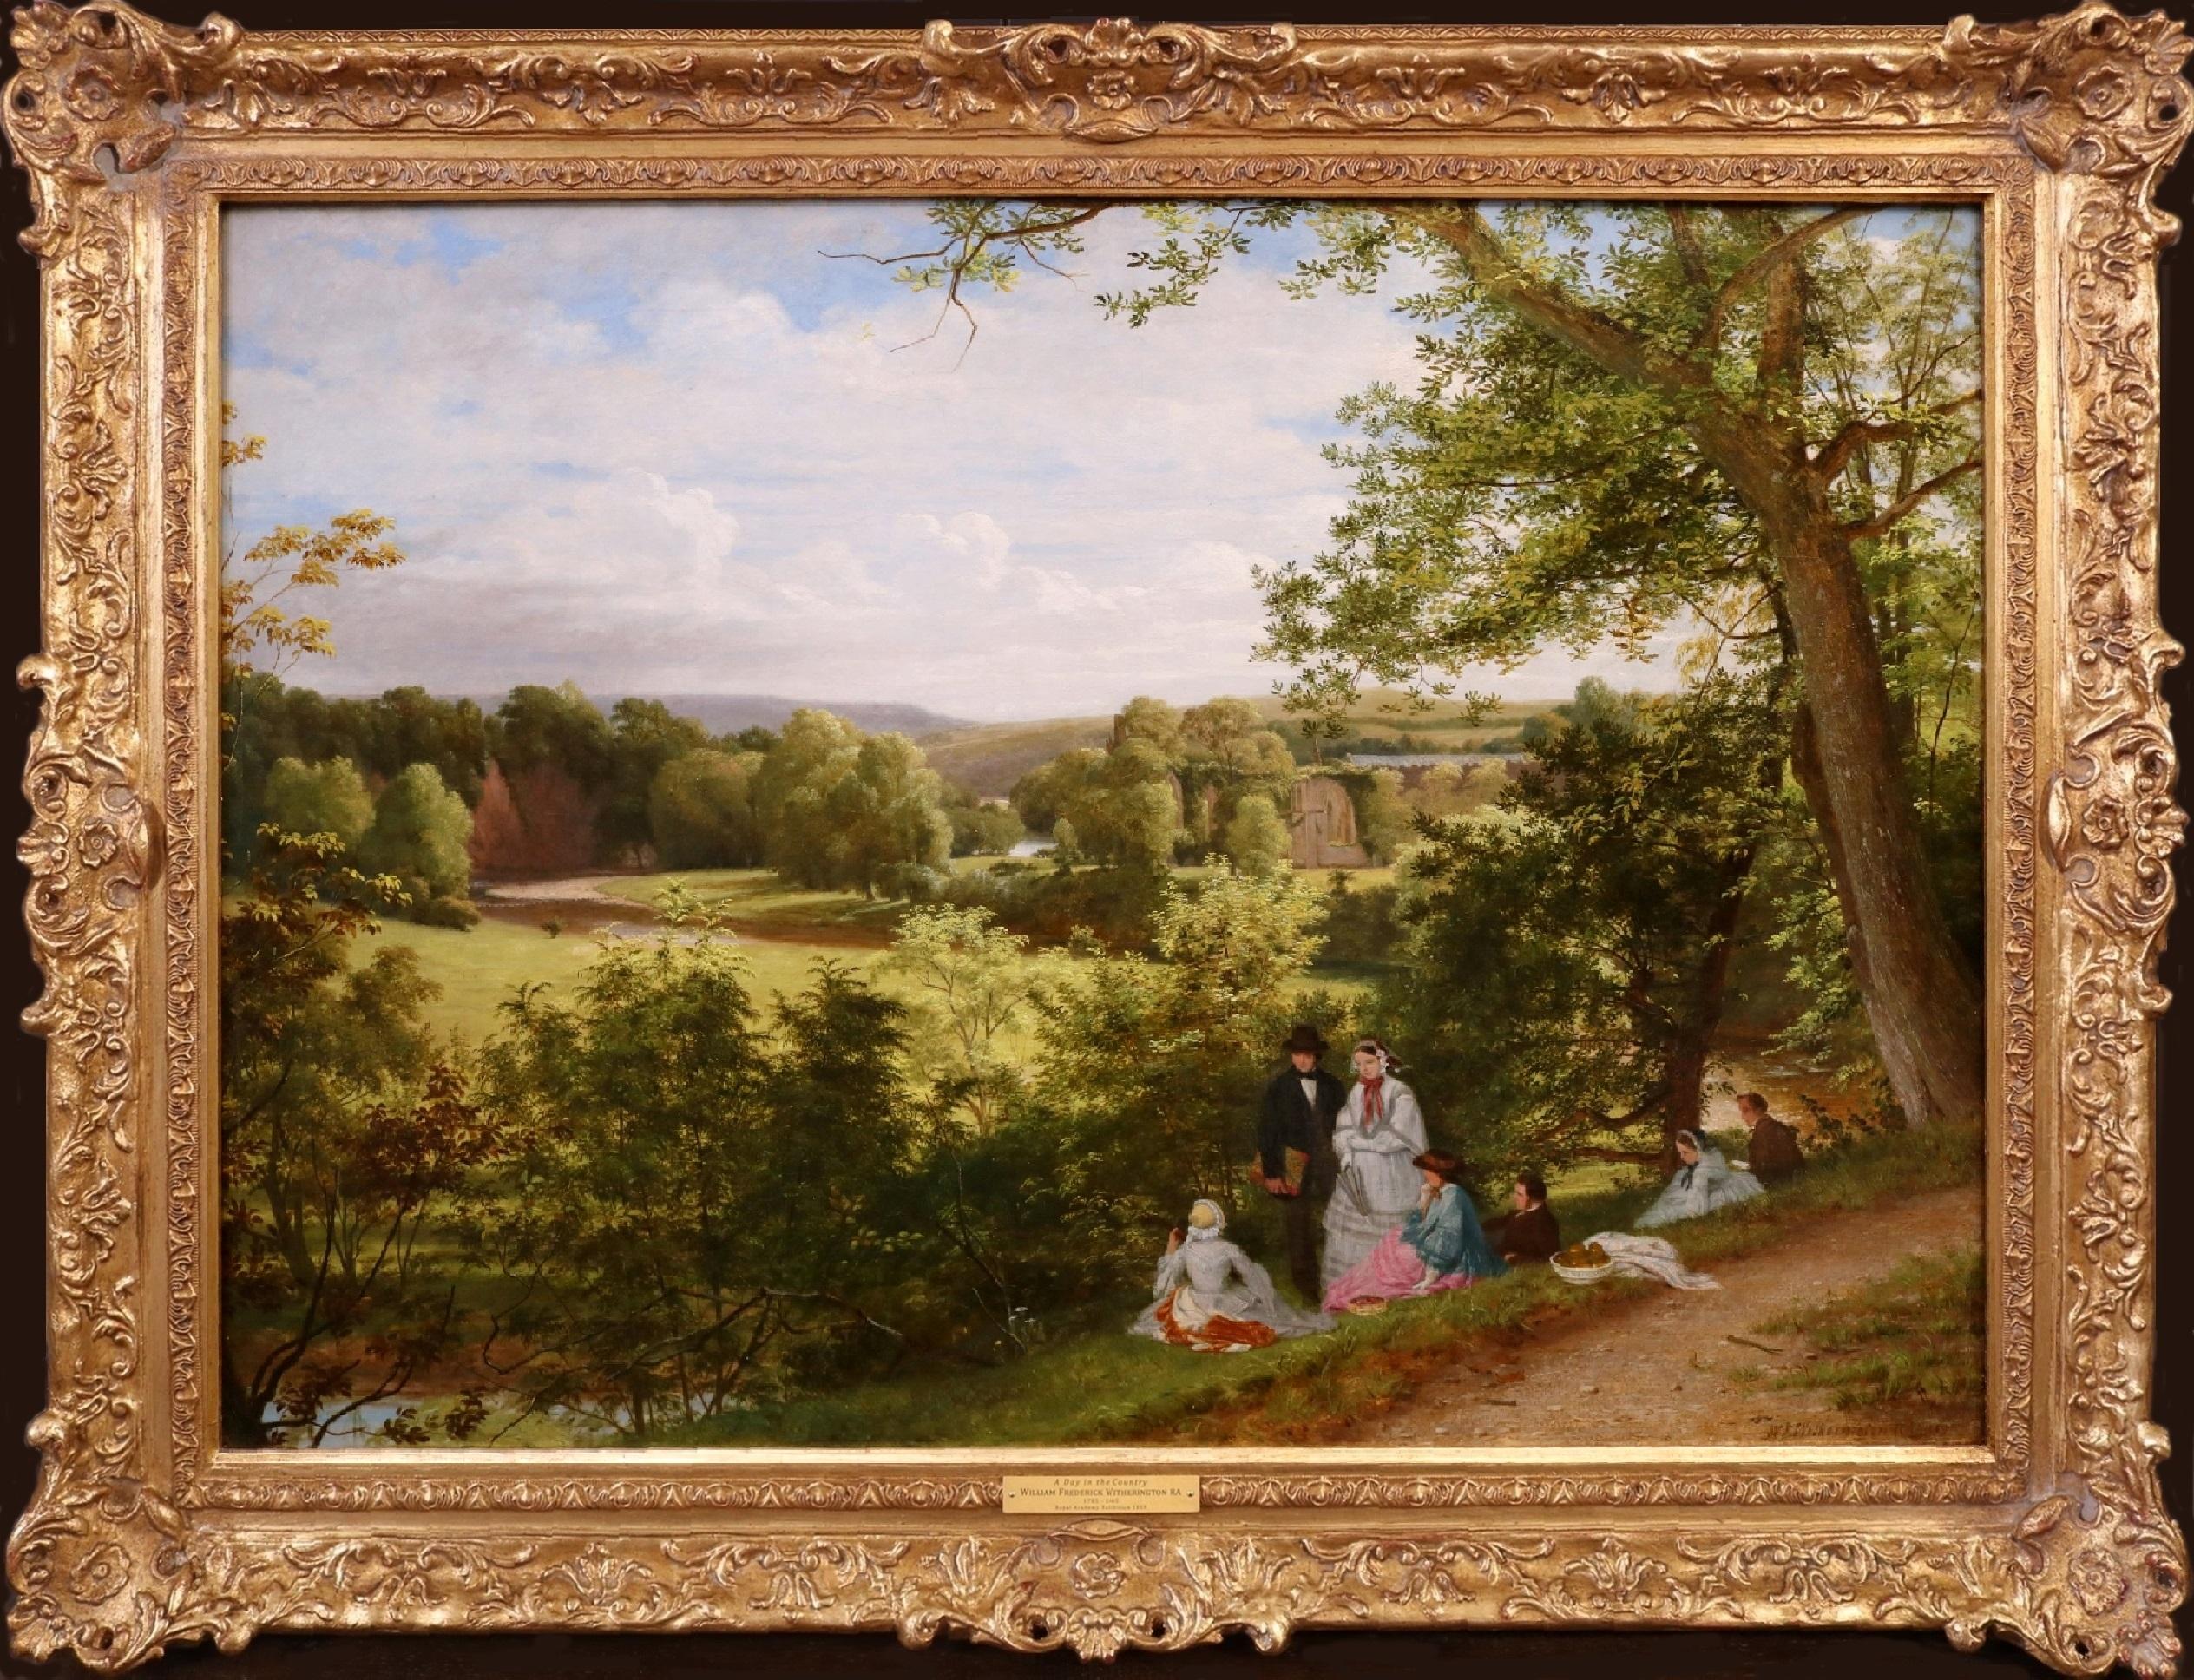 A Day in the County – Großes Ölgemälde-Landschaftsbild der Royal Academy, 19. Jahrhundert – Painting von William Frederick Witherington